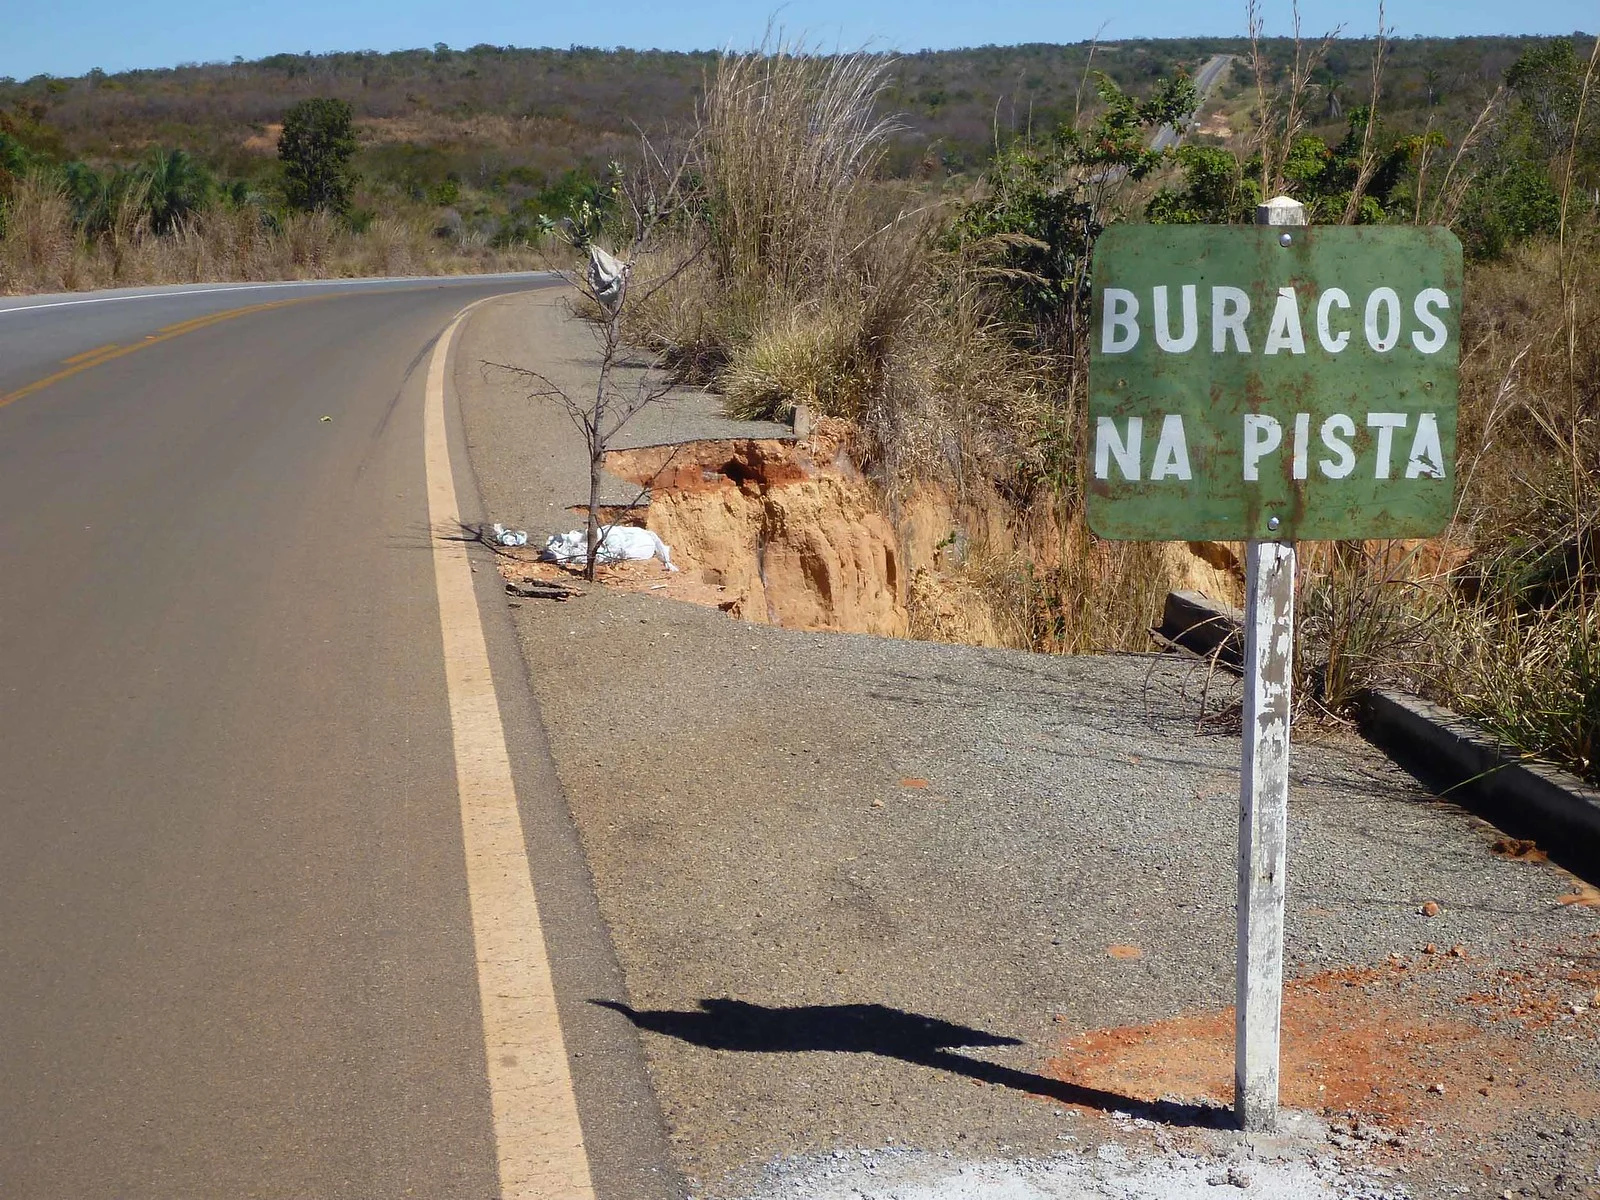 60% das rodovias estão inviáveis no Brasil